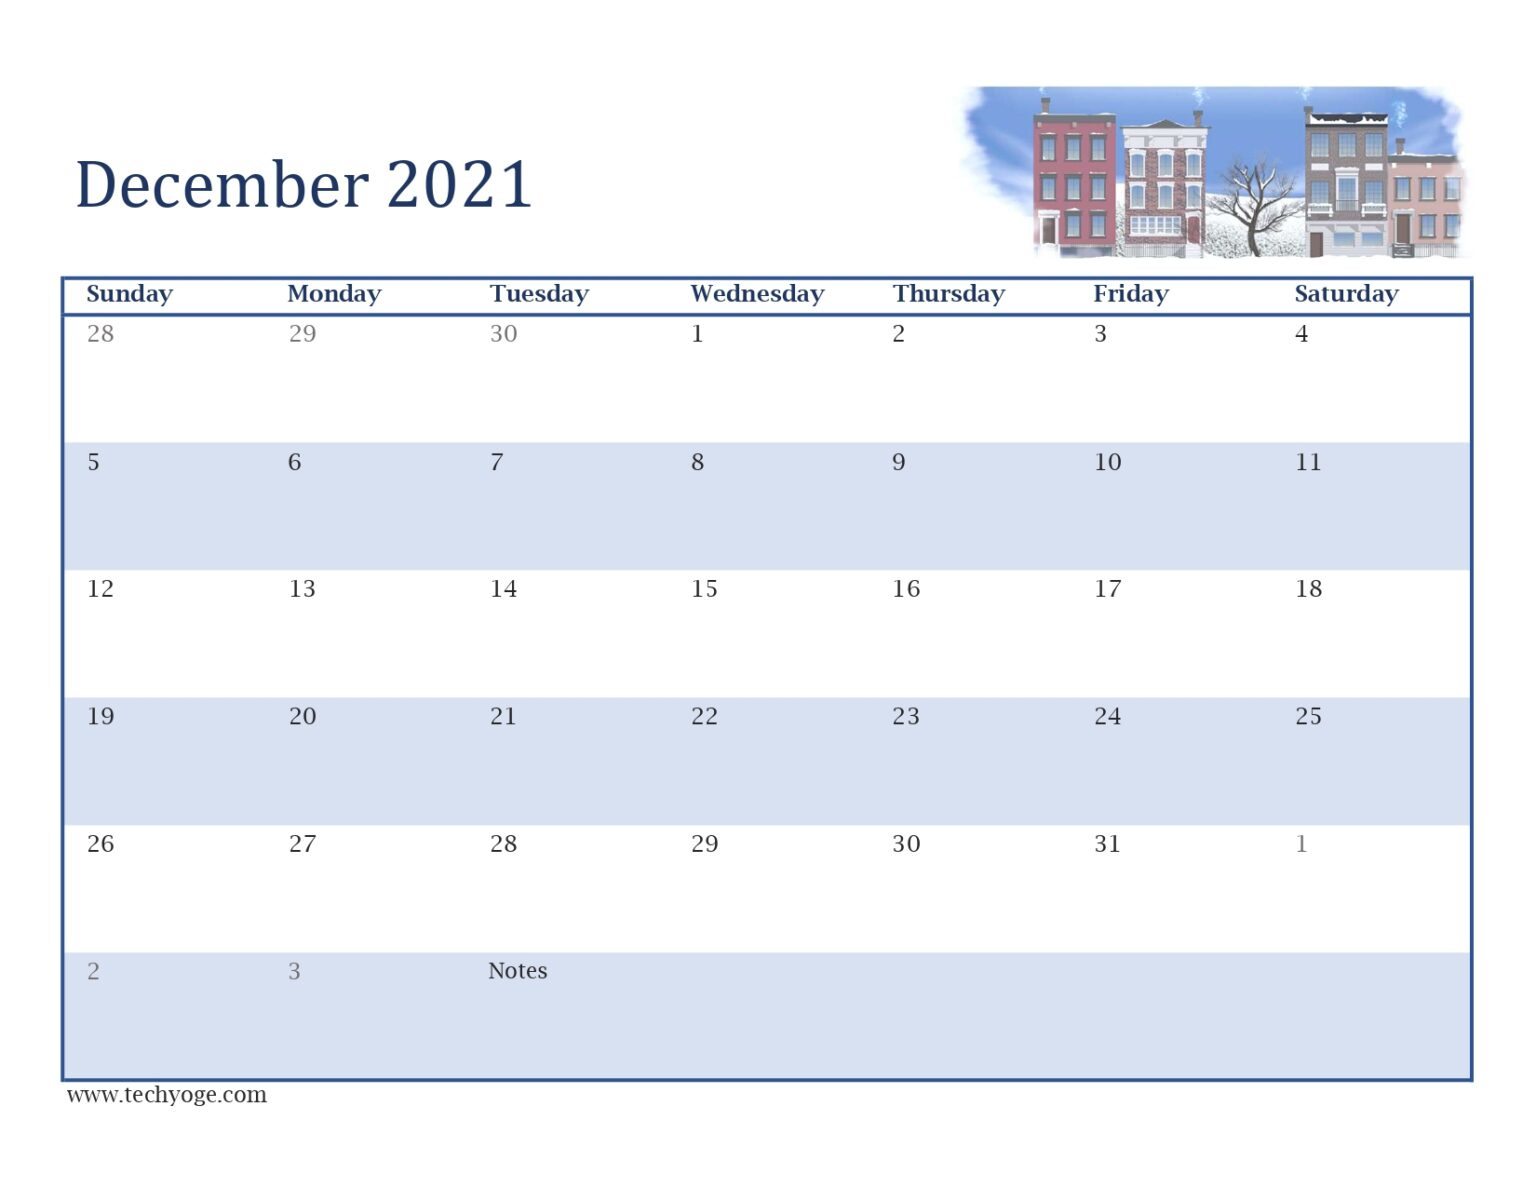 December 2021 Cute Calendar - Techyoge December 2021 Calendar Cute